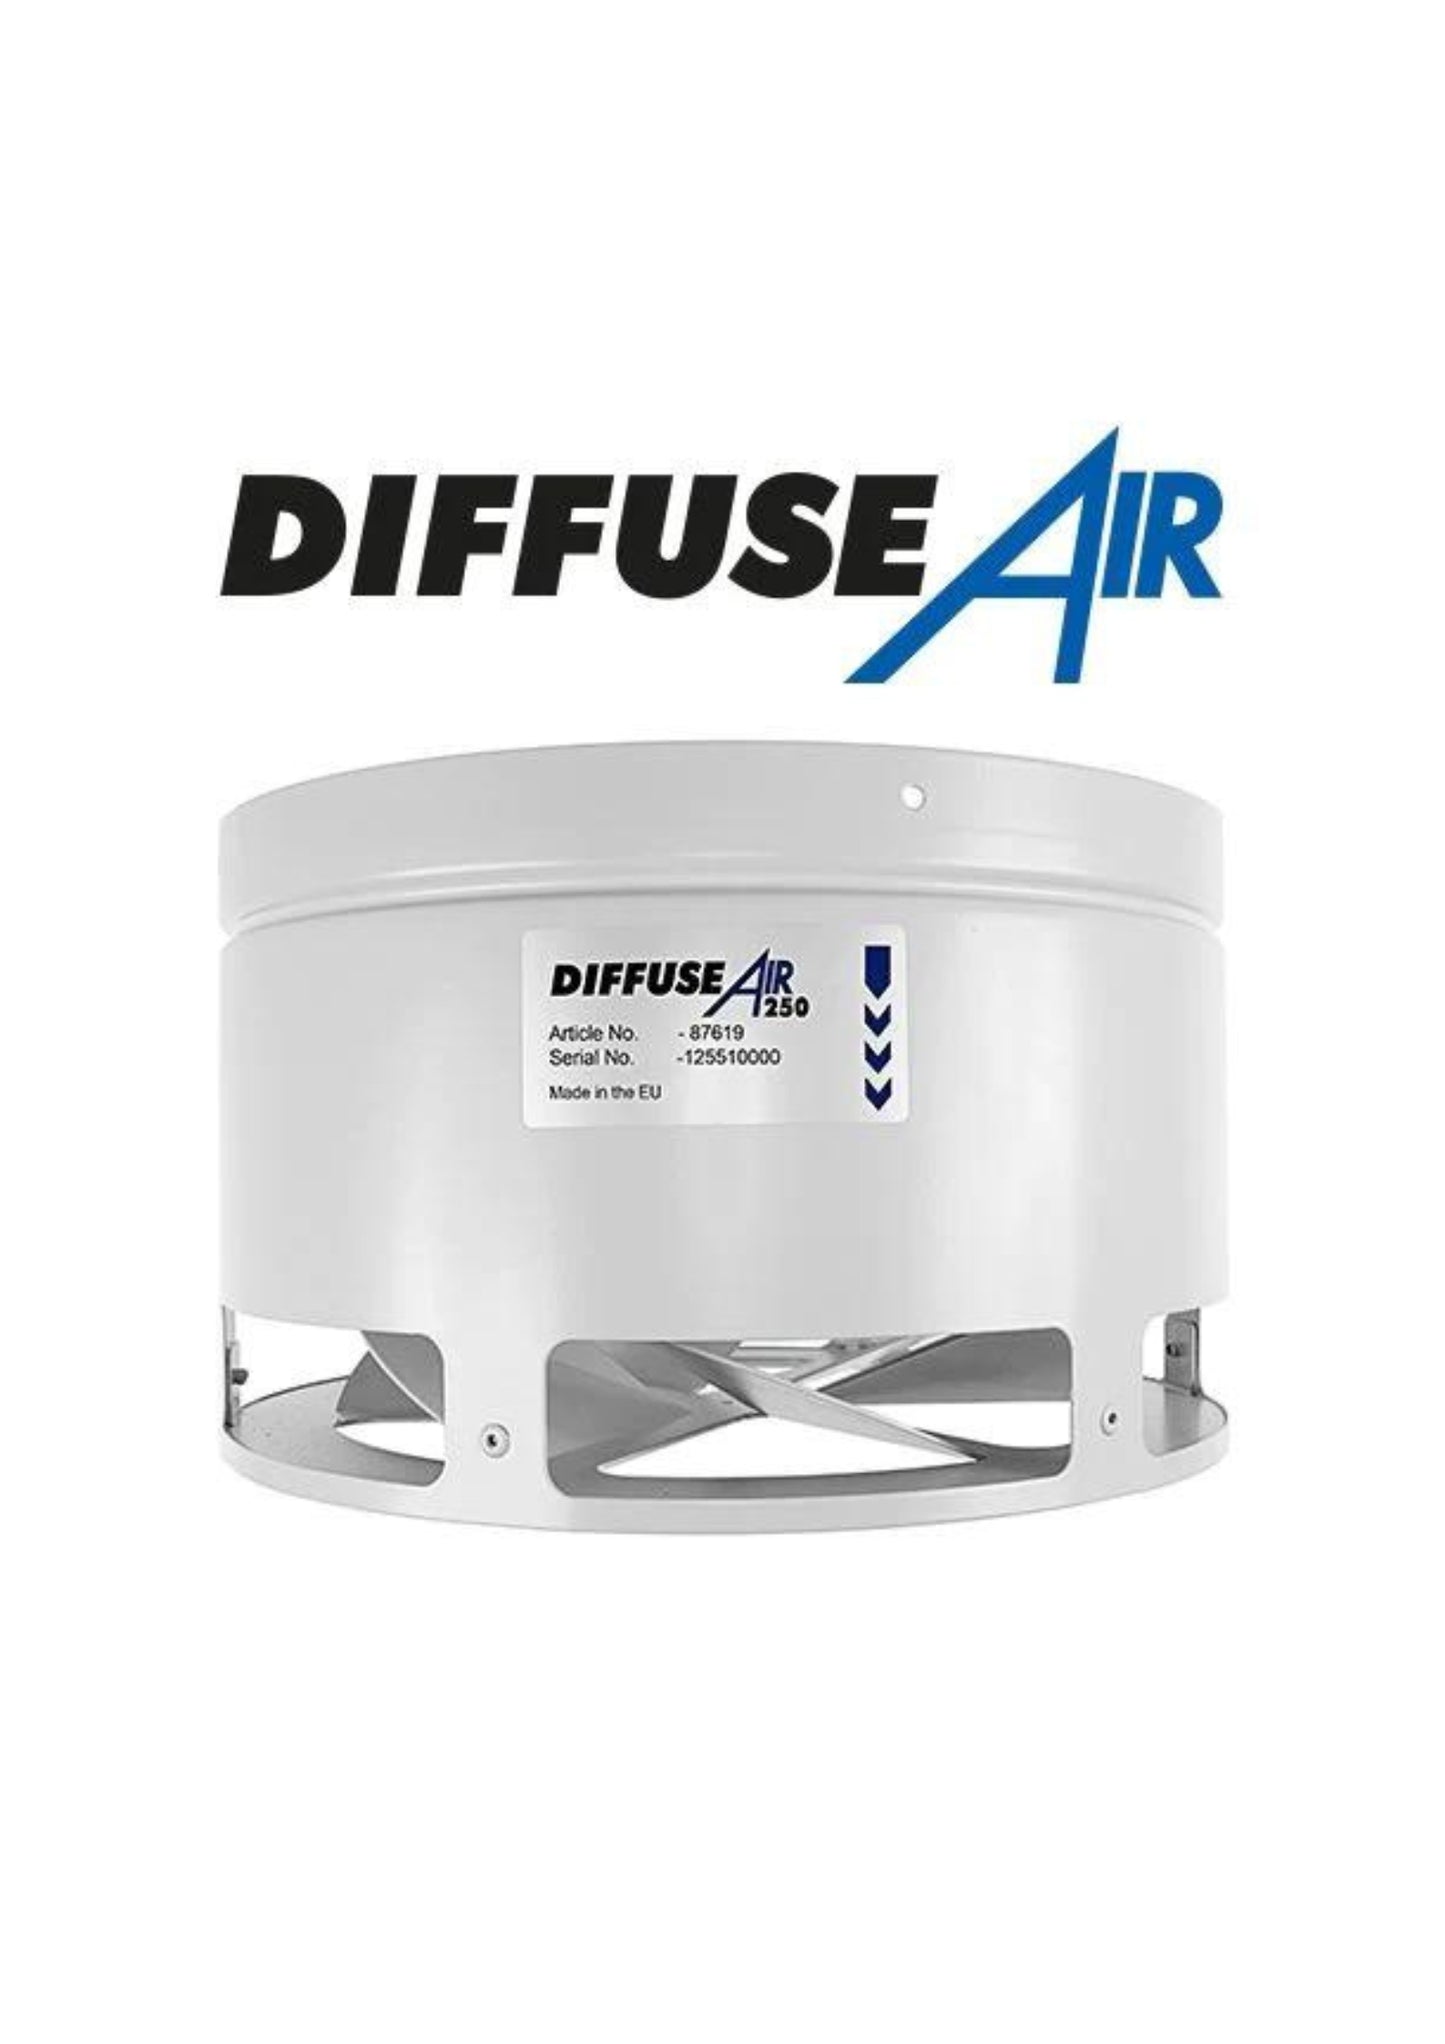 Diffuse Air